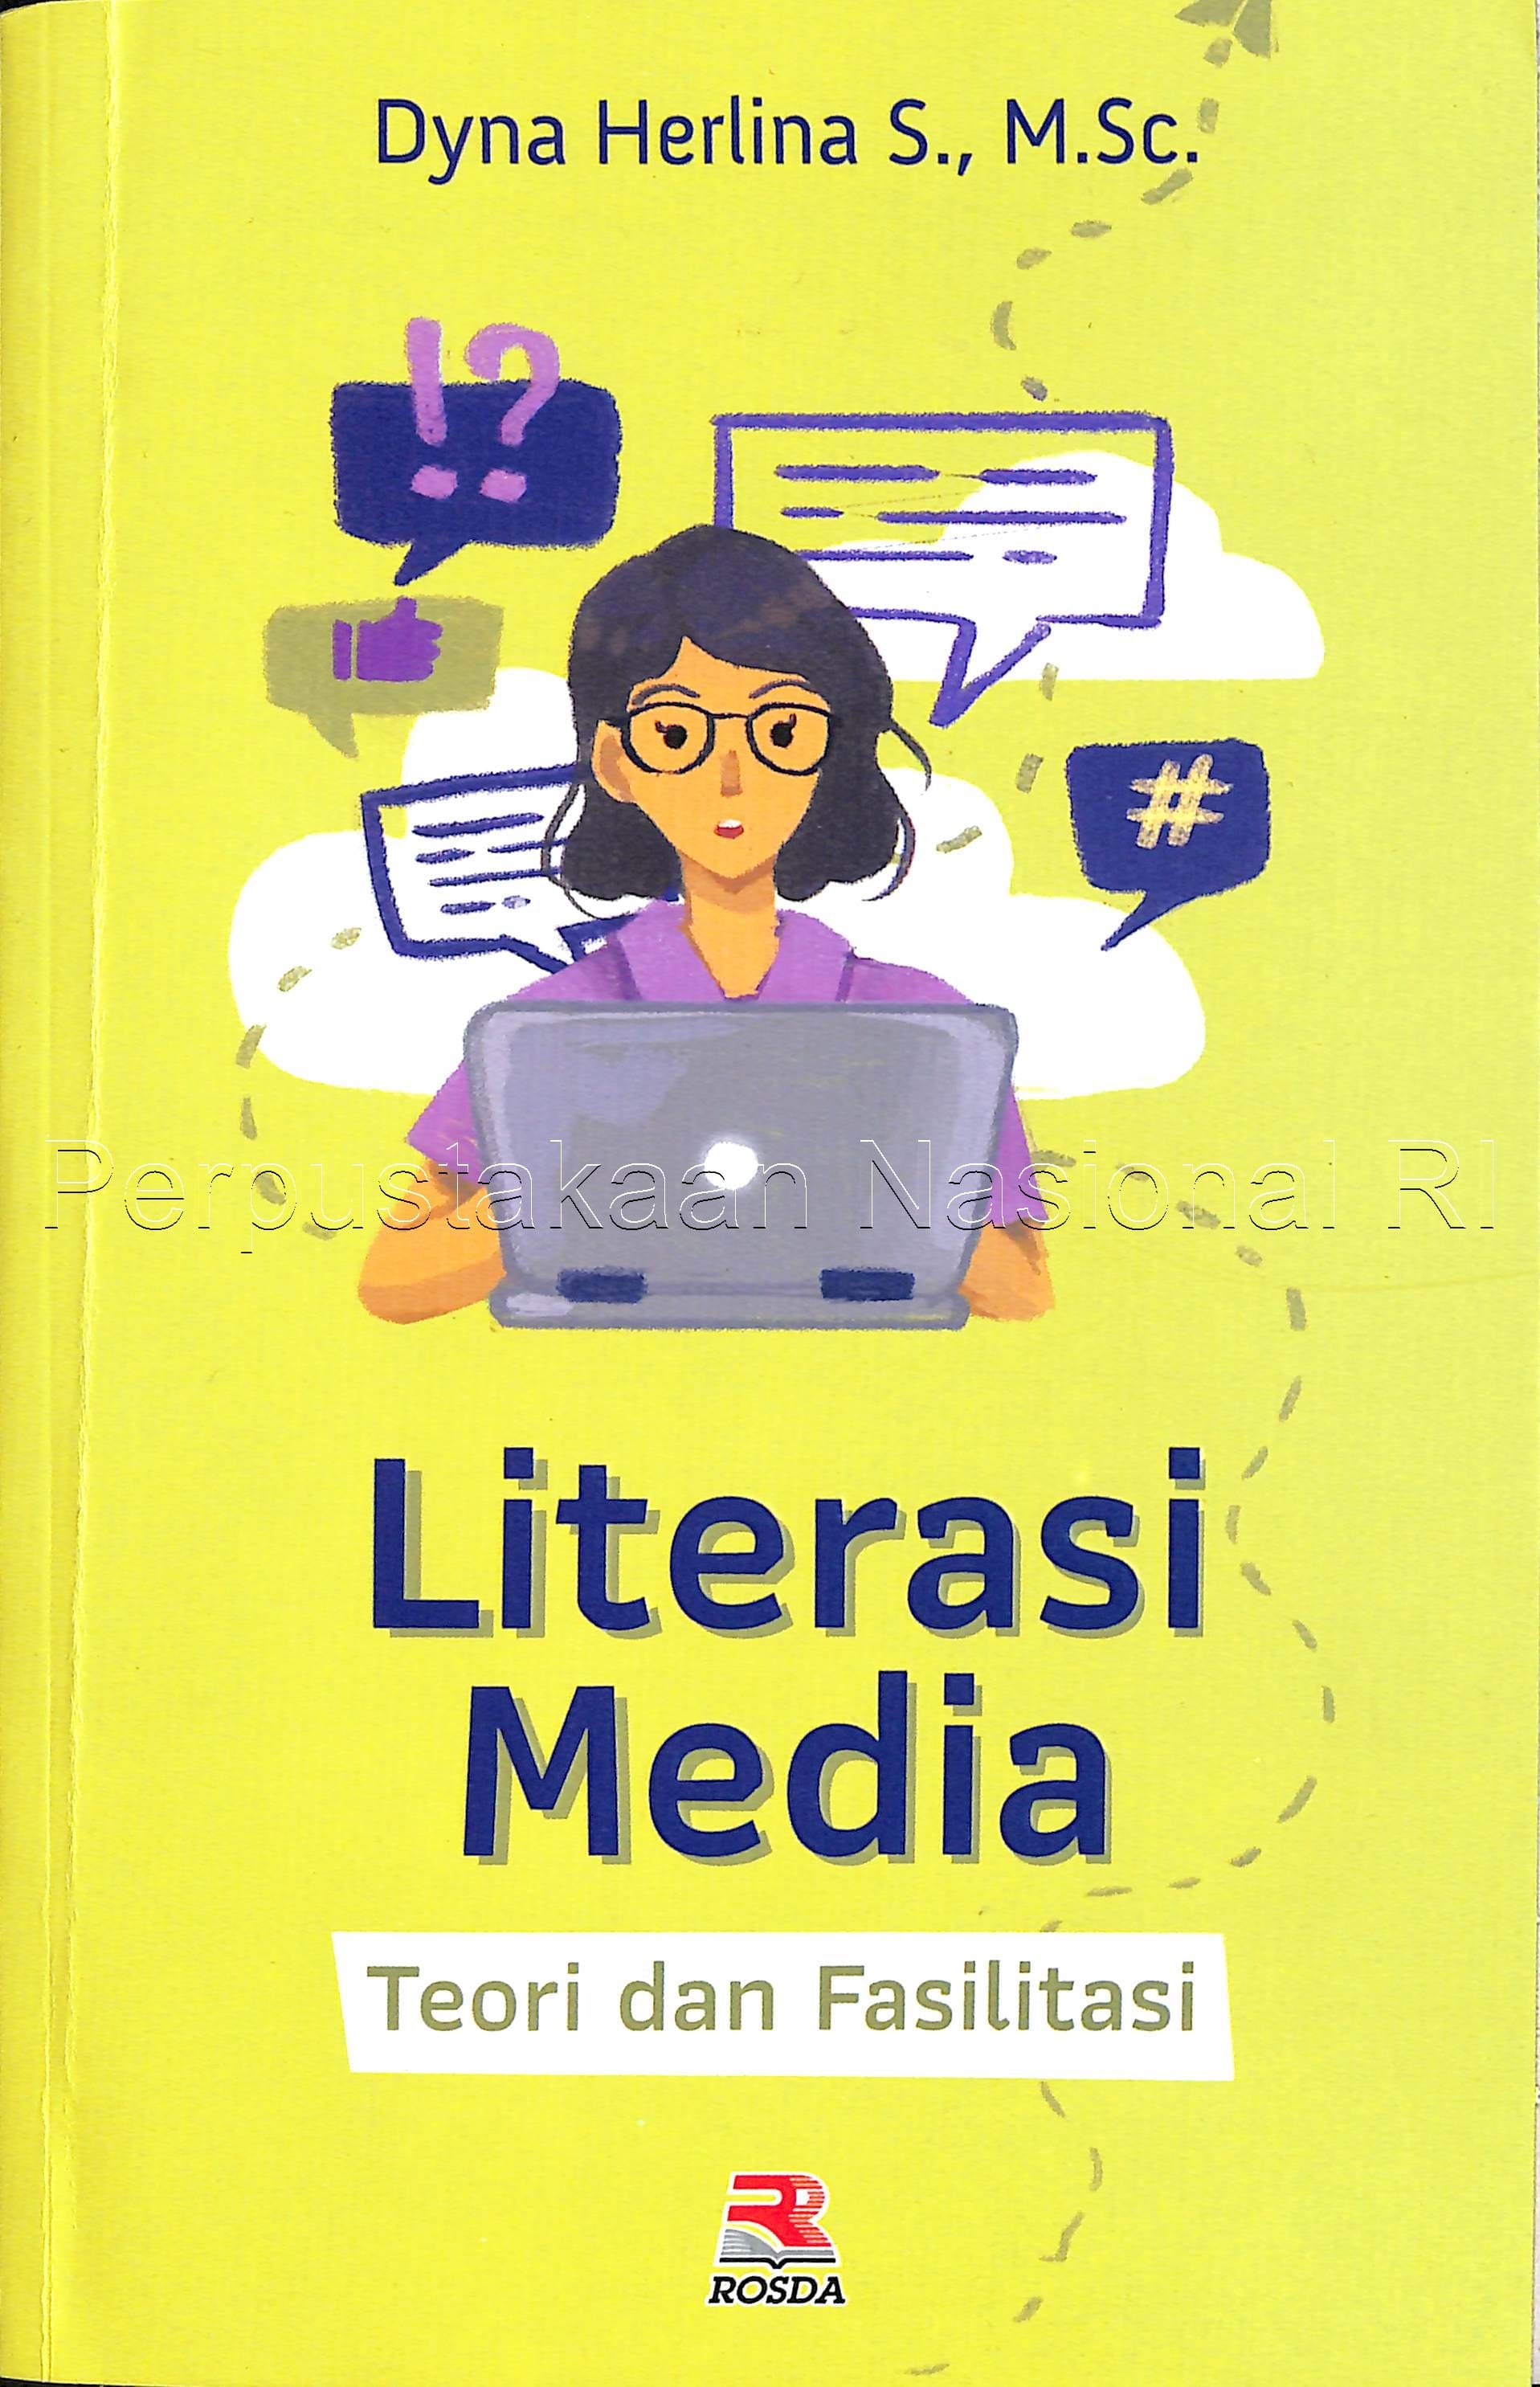 Literasi Media teori dan fasilitasi